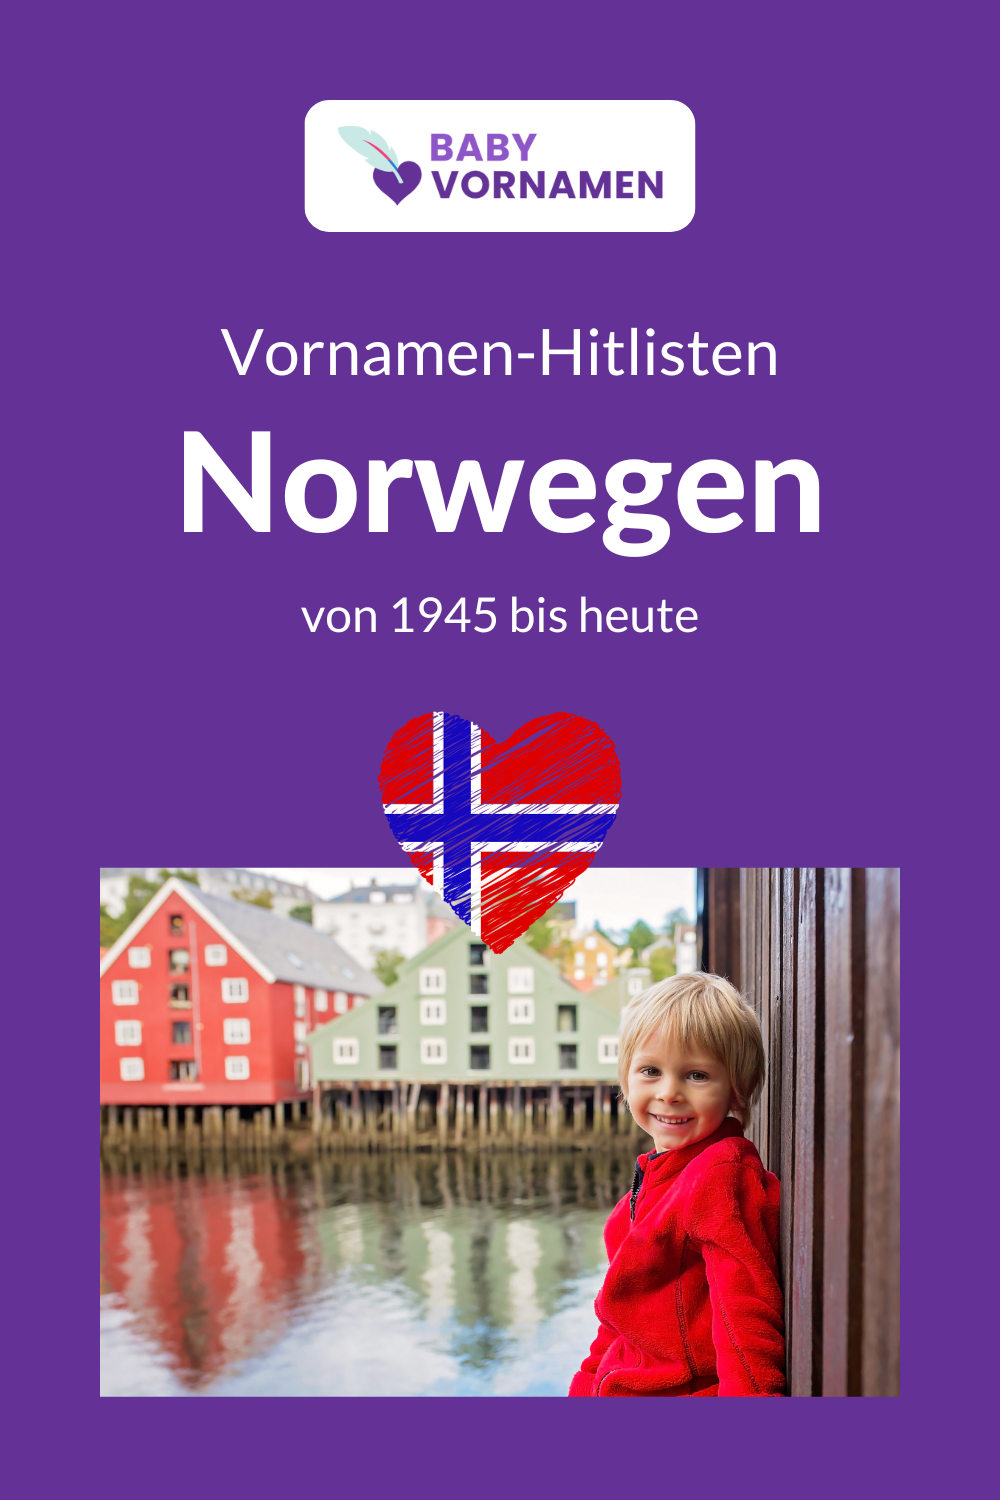 Beliebteste Vornamen in Norwegen